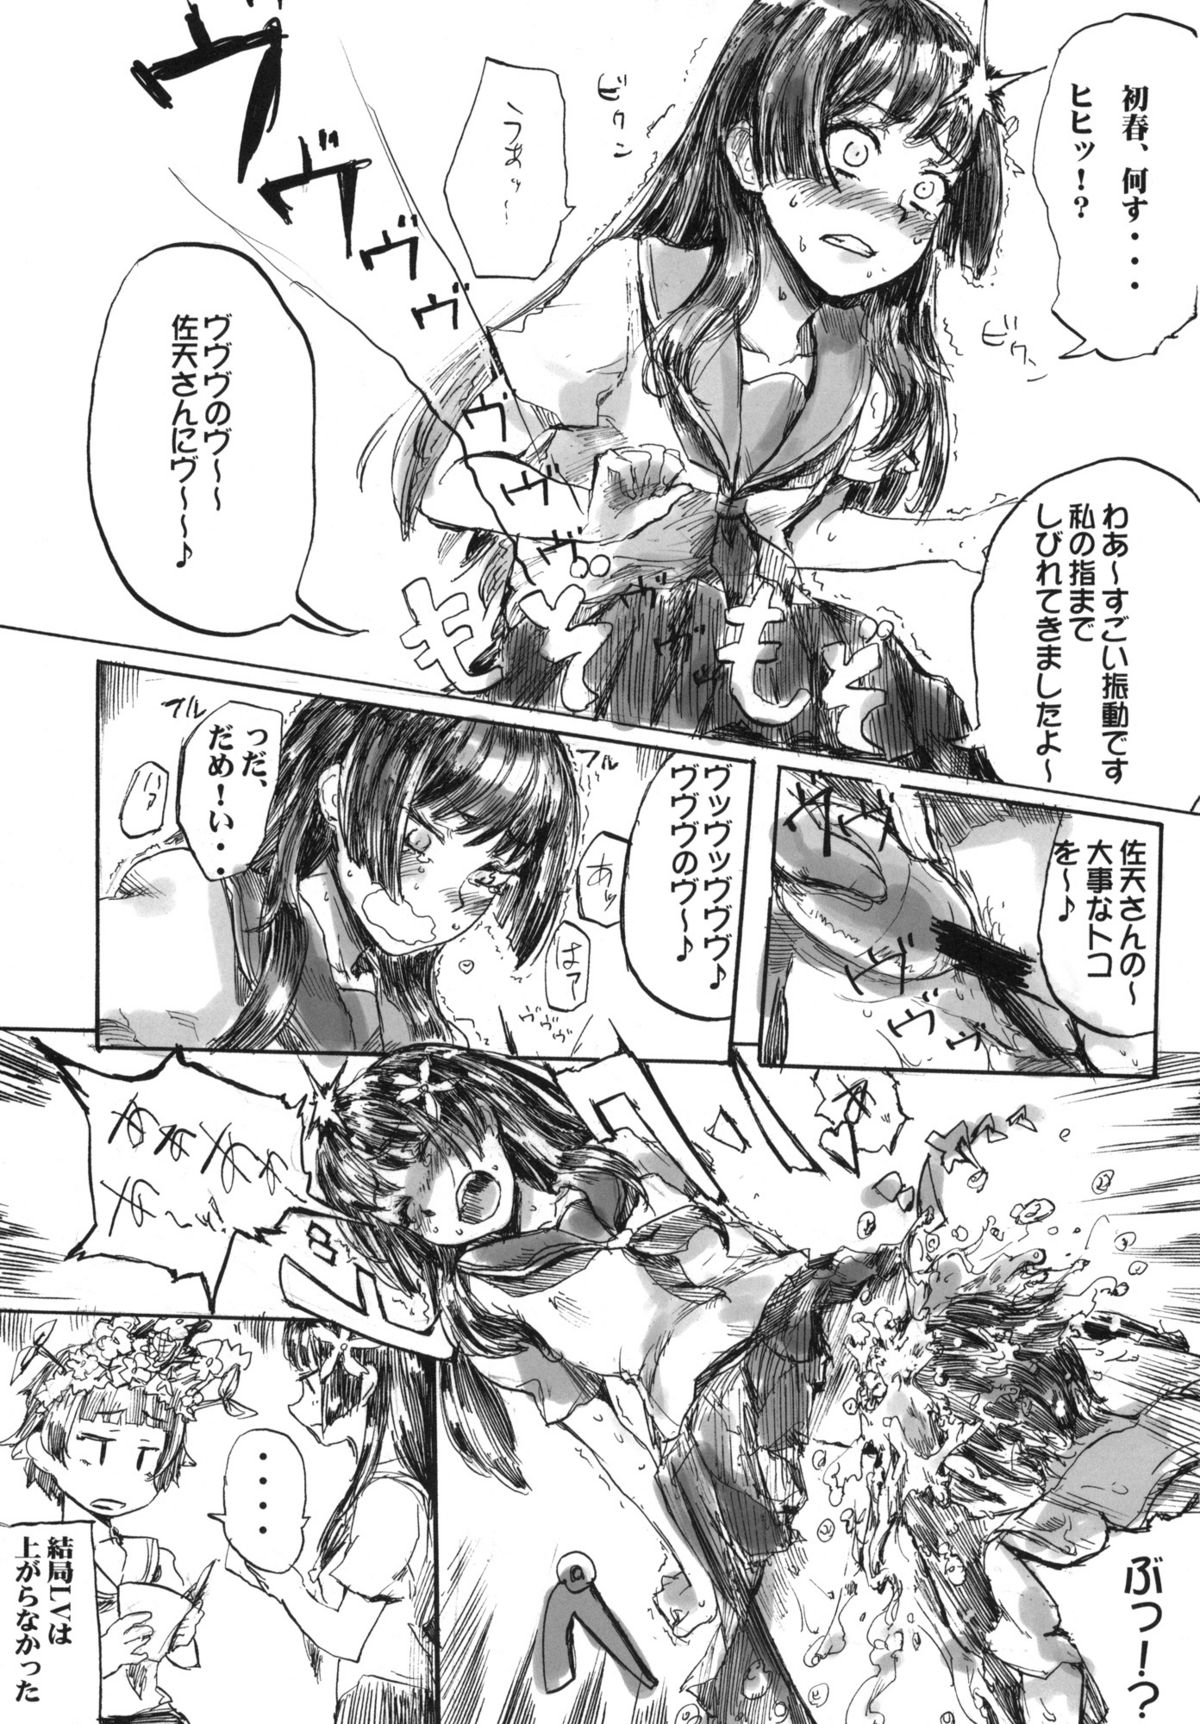 [MMU2000 (Mishima Hiroji)] i.Saten (Toaru Kagaku no Railgun) page 24 full